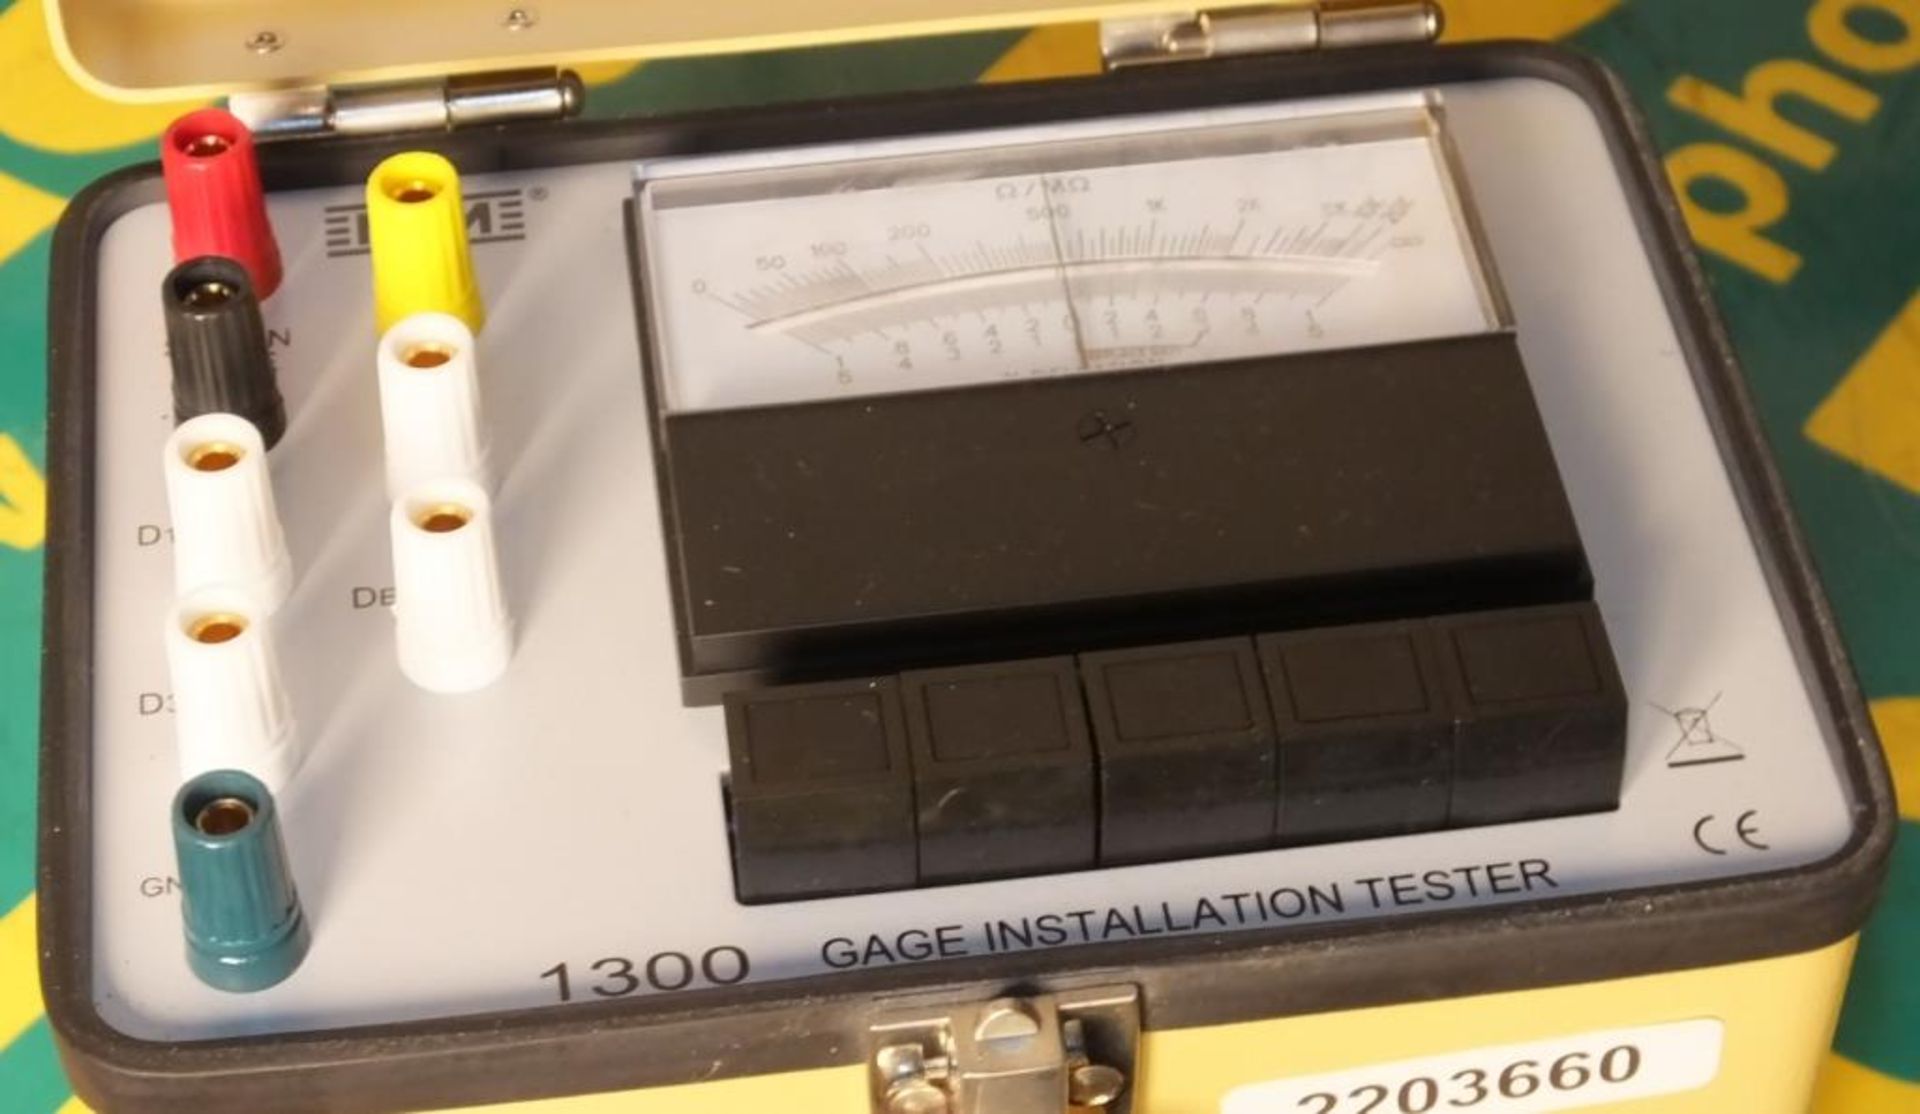 MEM 1300 Gauge Installation Tester - Image 3 of 3